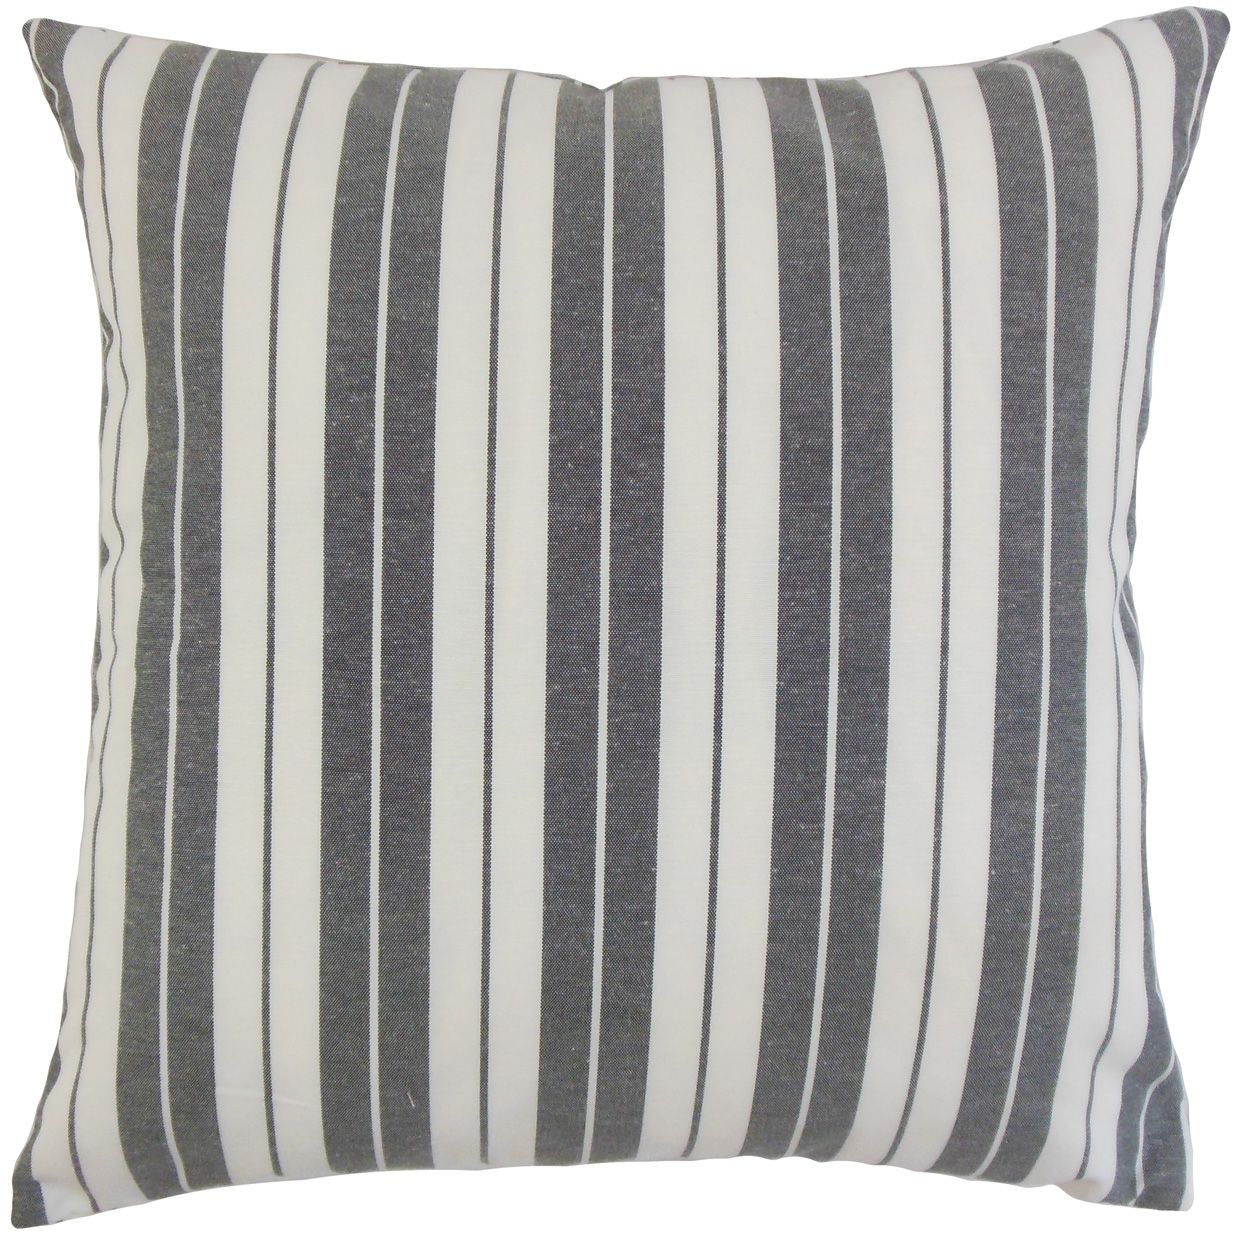 Henley Stripe Pillow, Black, 22" x 22" - Image 0